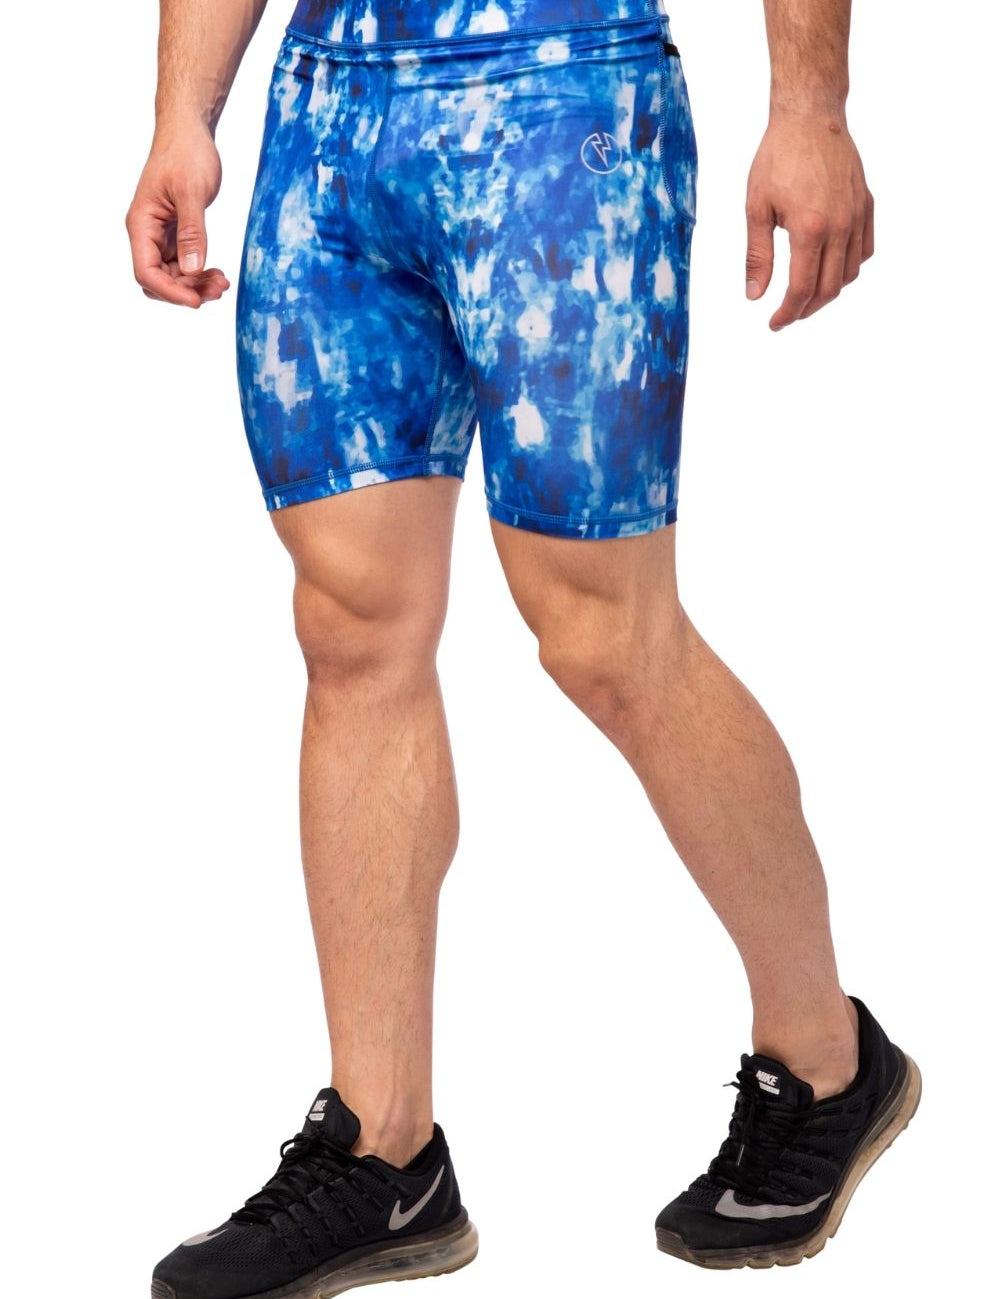 Blizzard Compression Shorts - Kapow Meggings